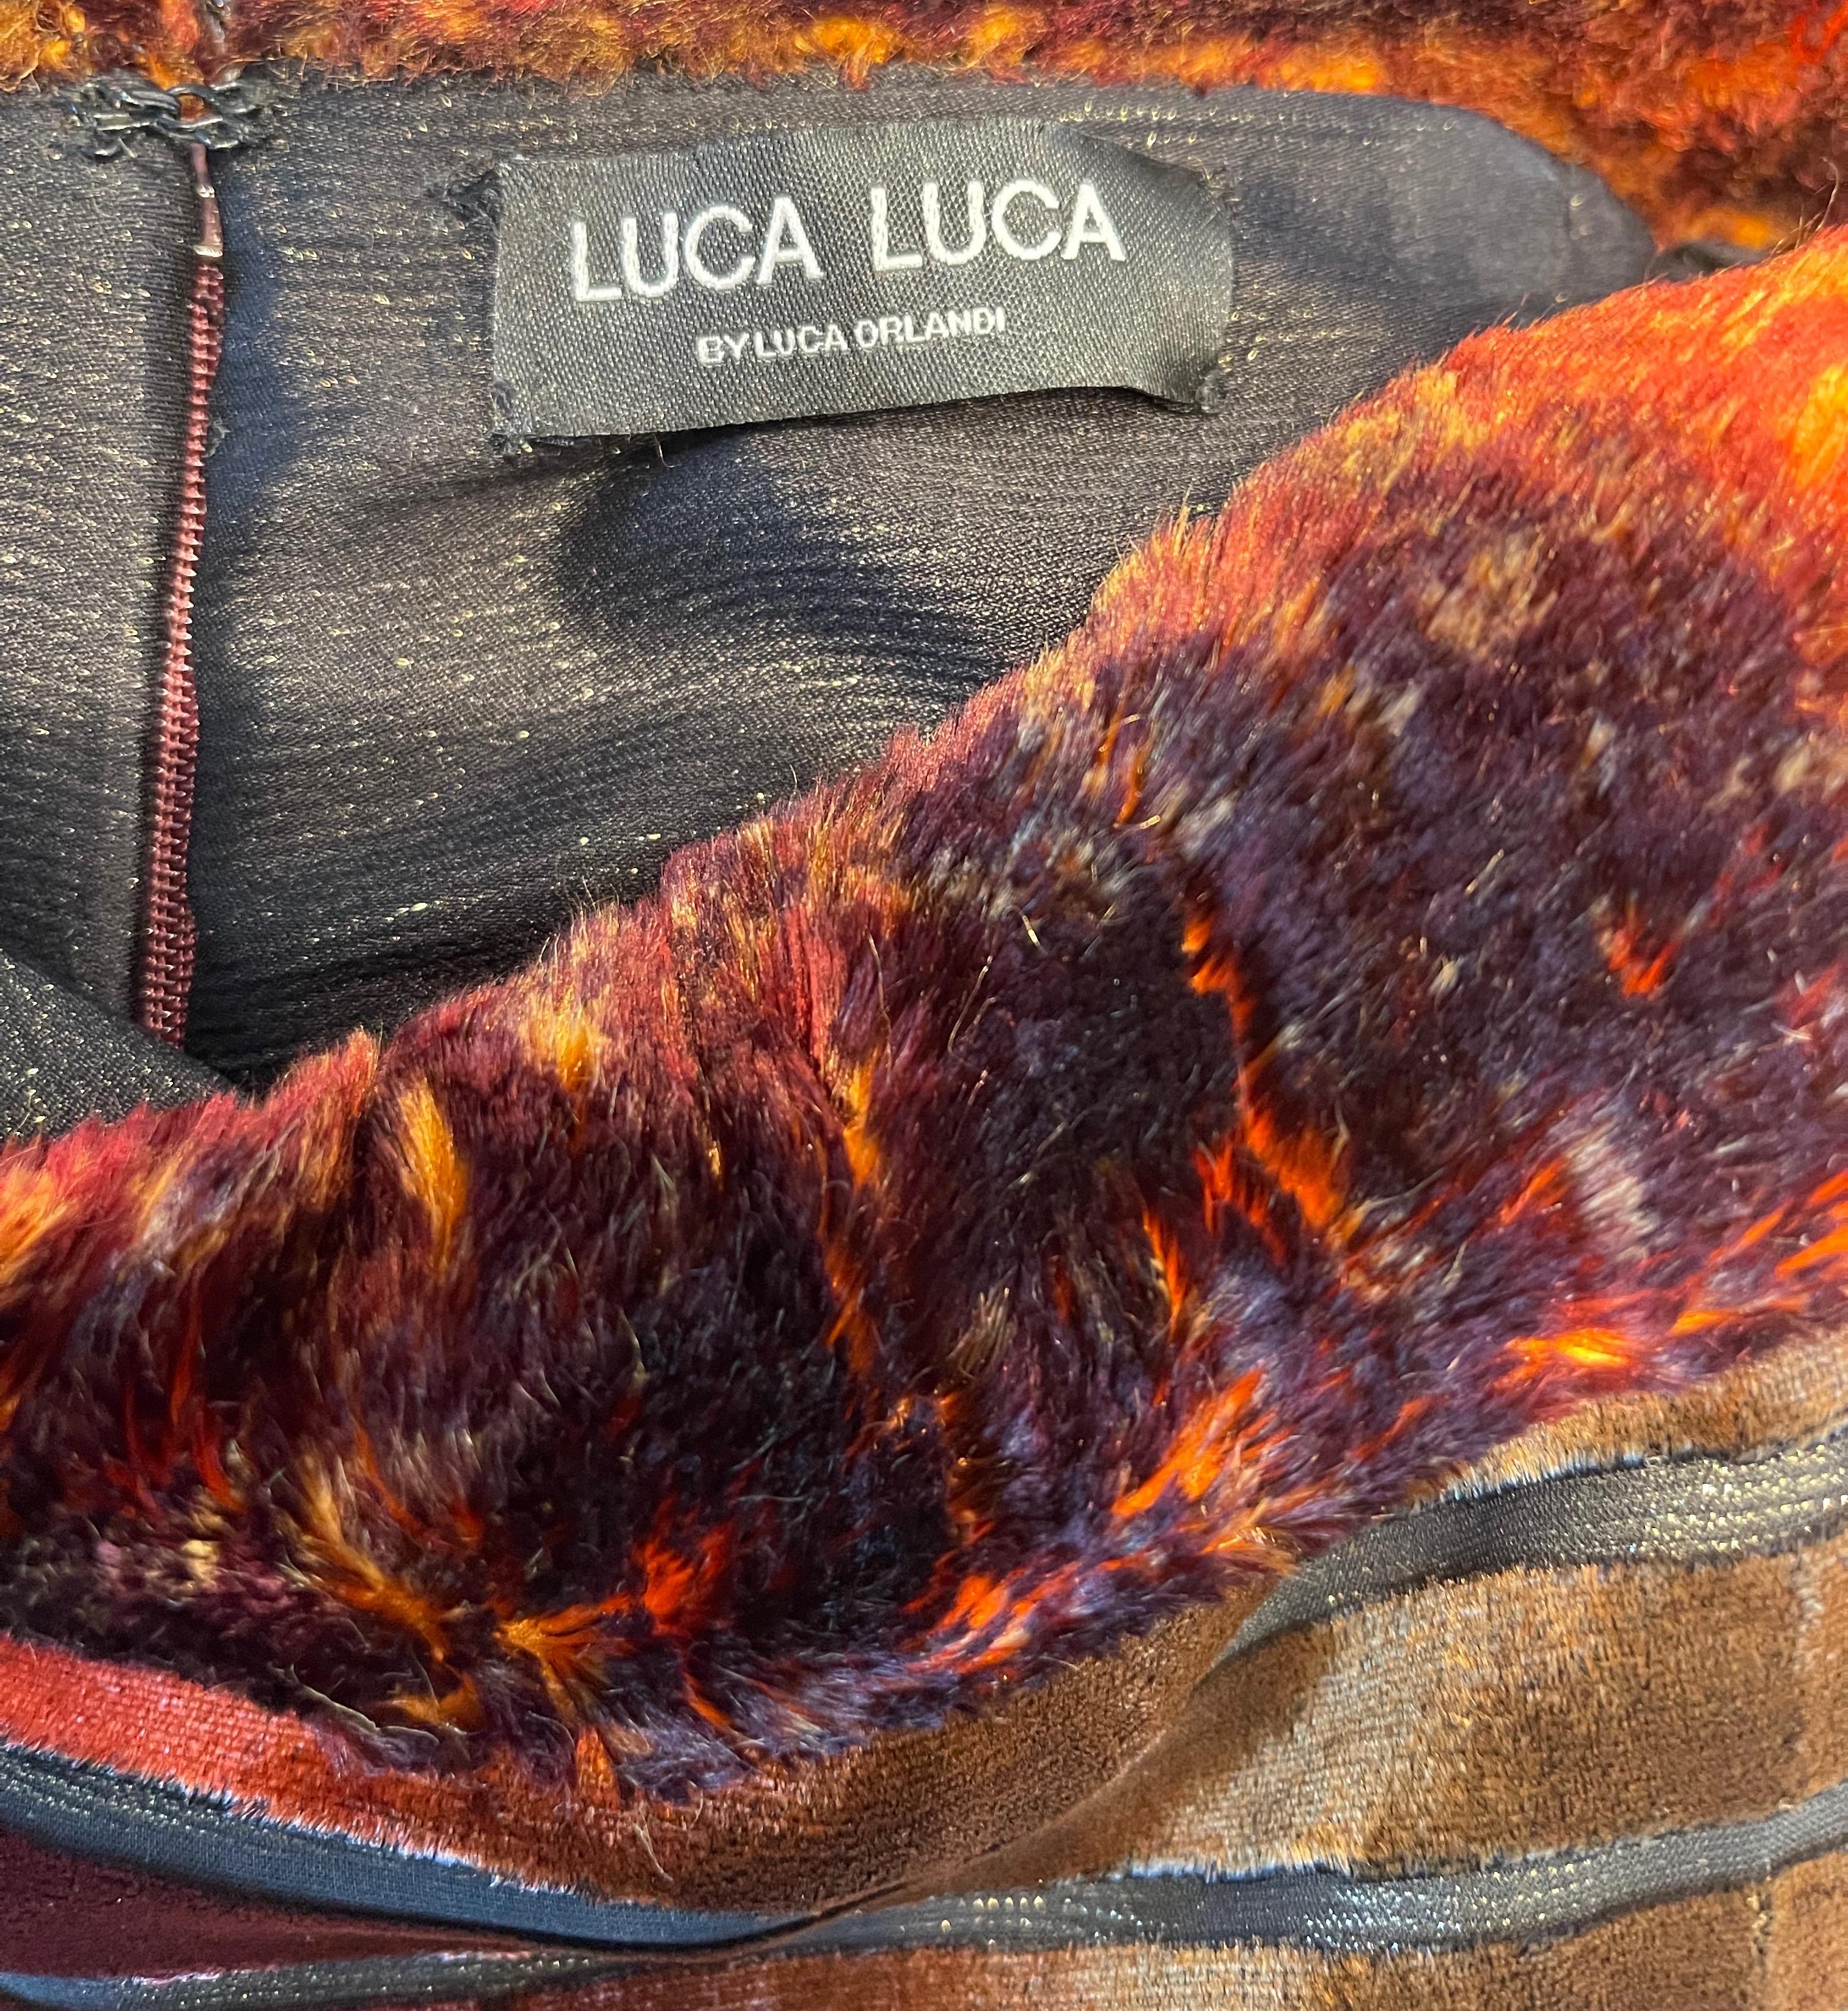 Sexy fin des années 90 Luca Luca by Luca Orlandi fausse fourrure, velours coupé et lurex robe bustier ! Les couleurs chaudes et automnales de l'orange, de l'orange Burt, du bordeaux, du noir et de l'or sont omniprésentes. Les découpes sur l'ensemble